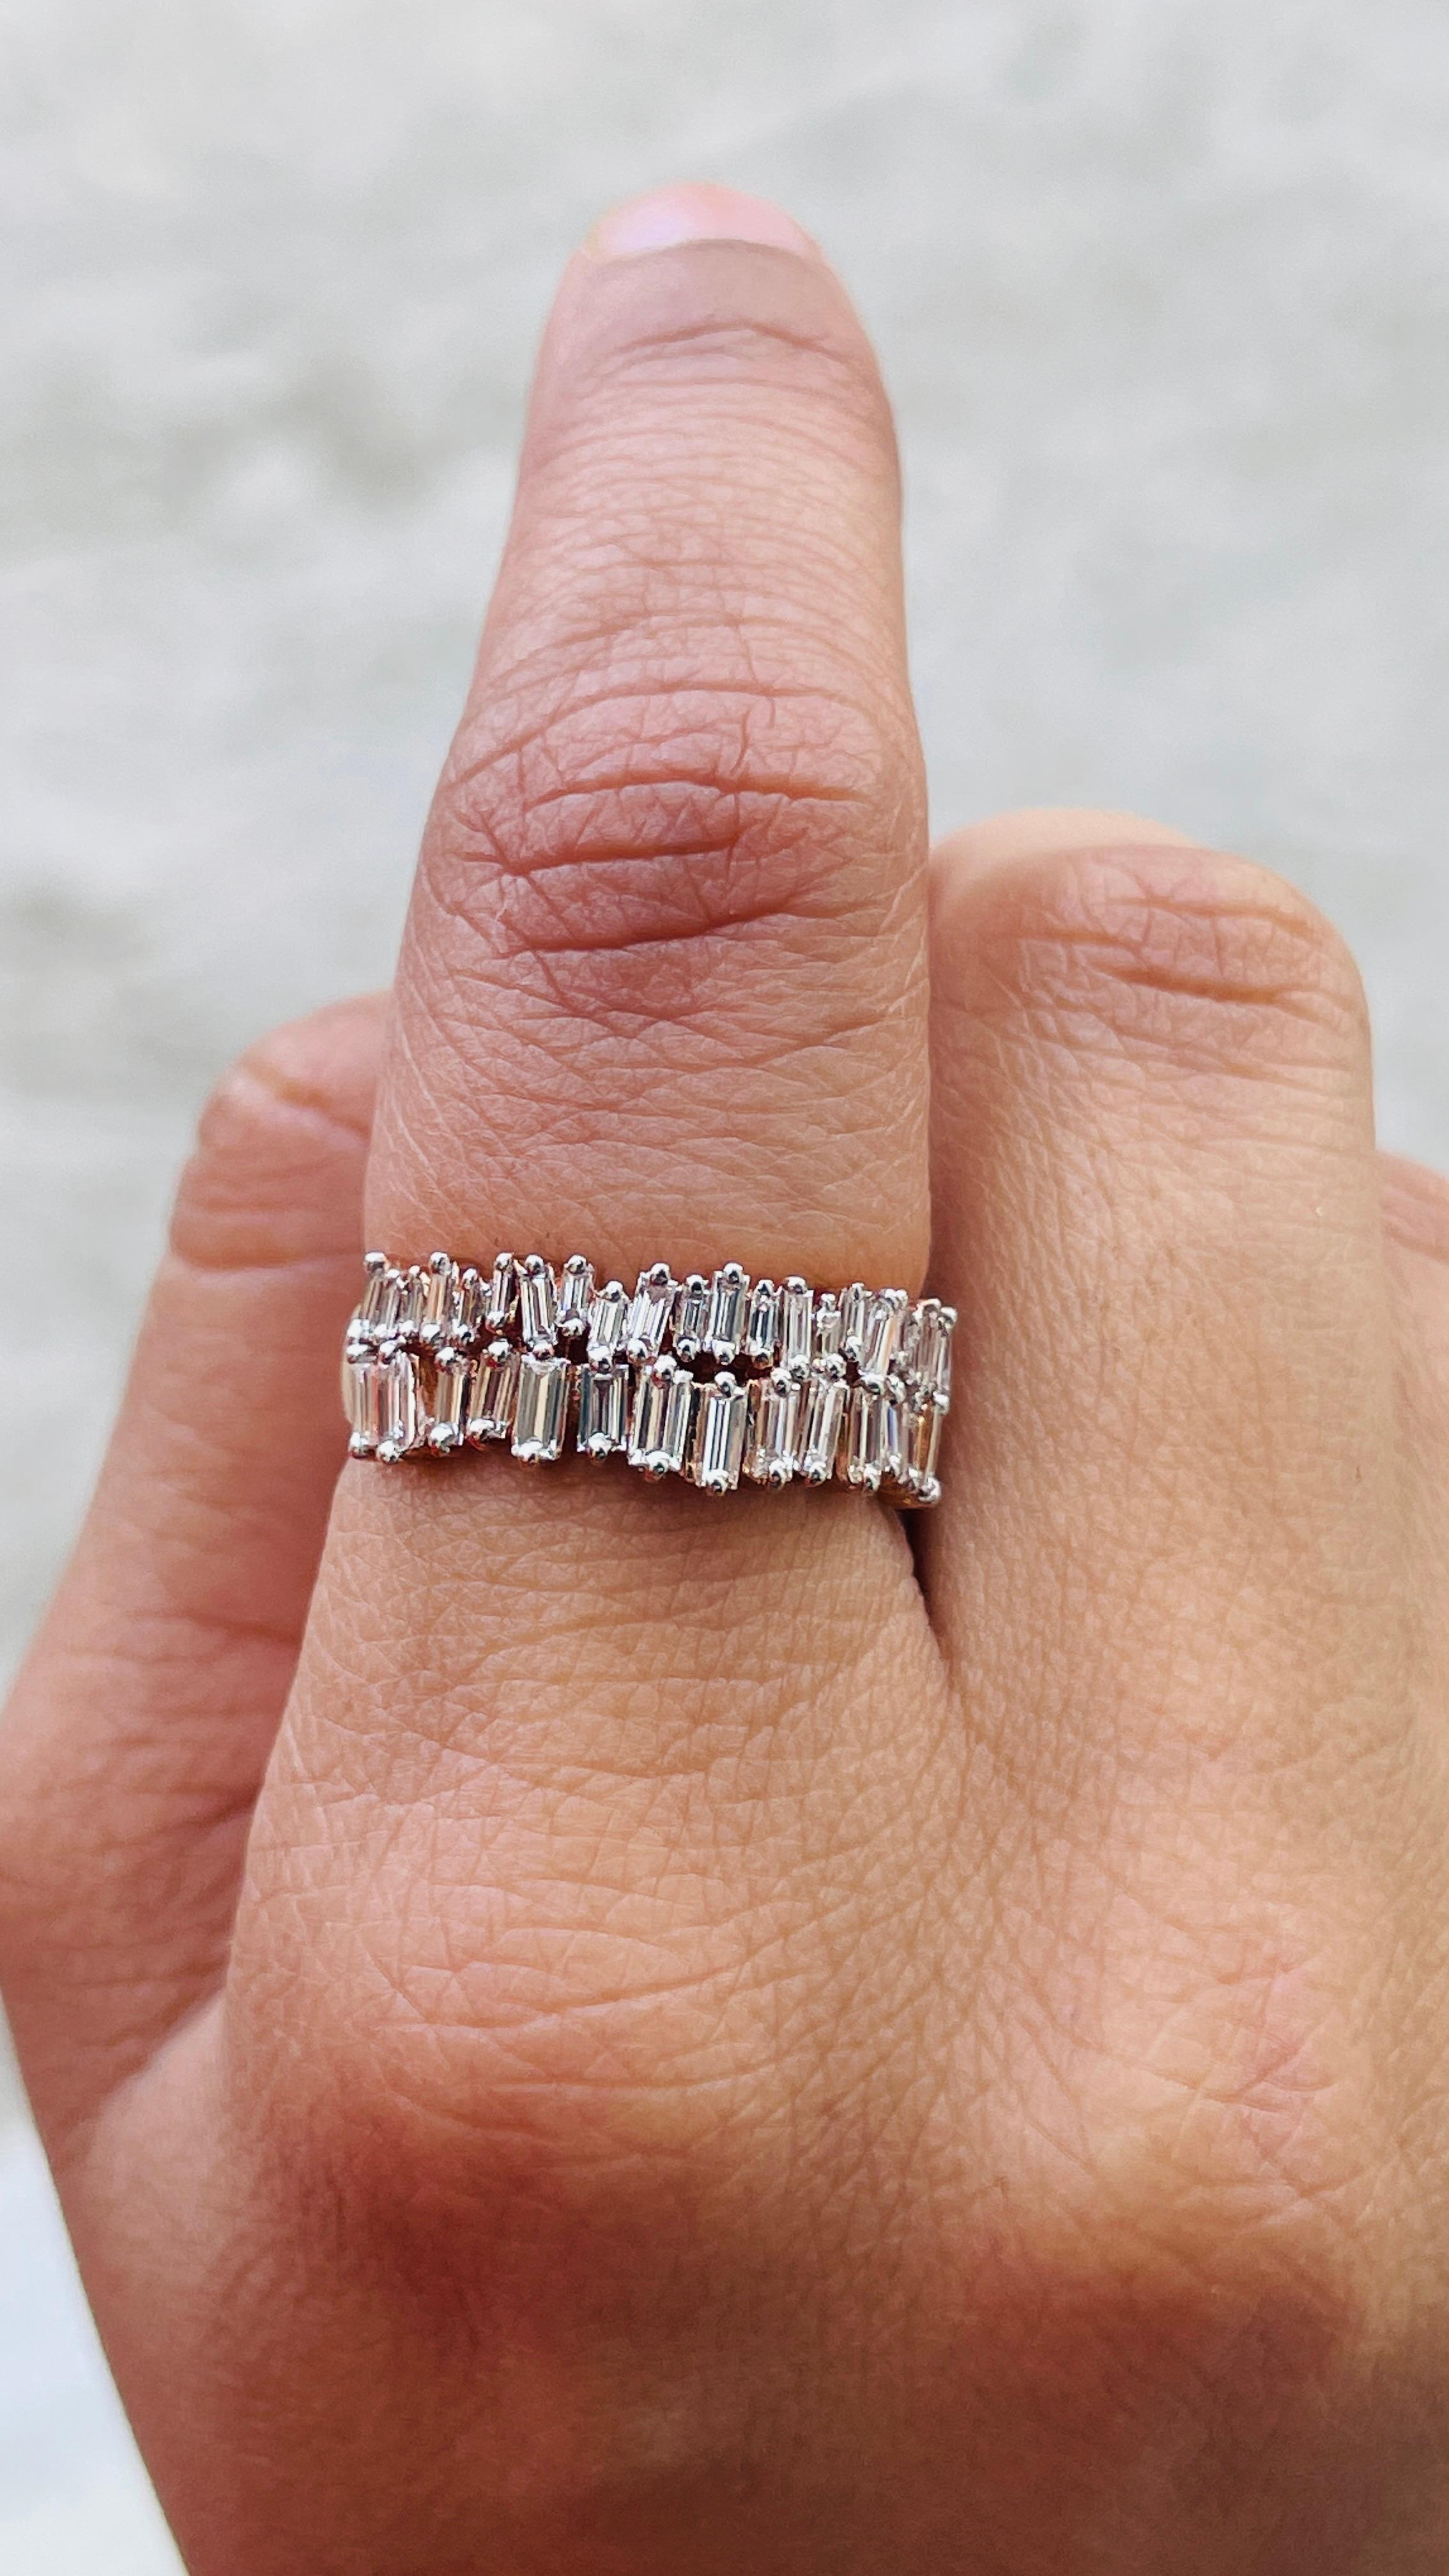 For Sale:  1 Carat Diamond Engagement Band Ring in 14 Karat Rose Gold 5